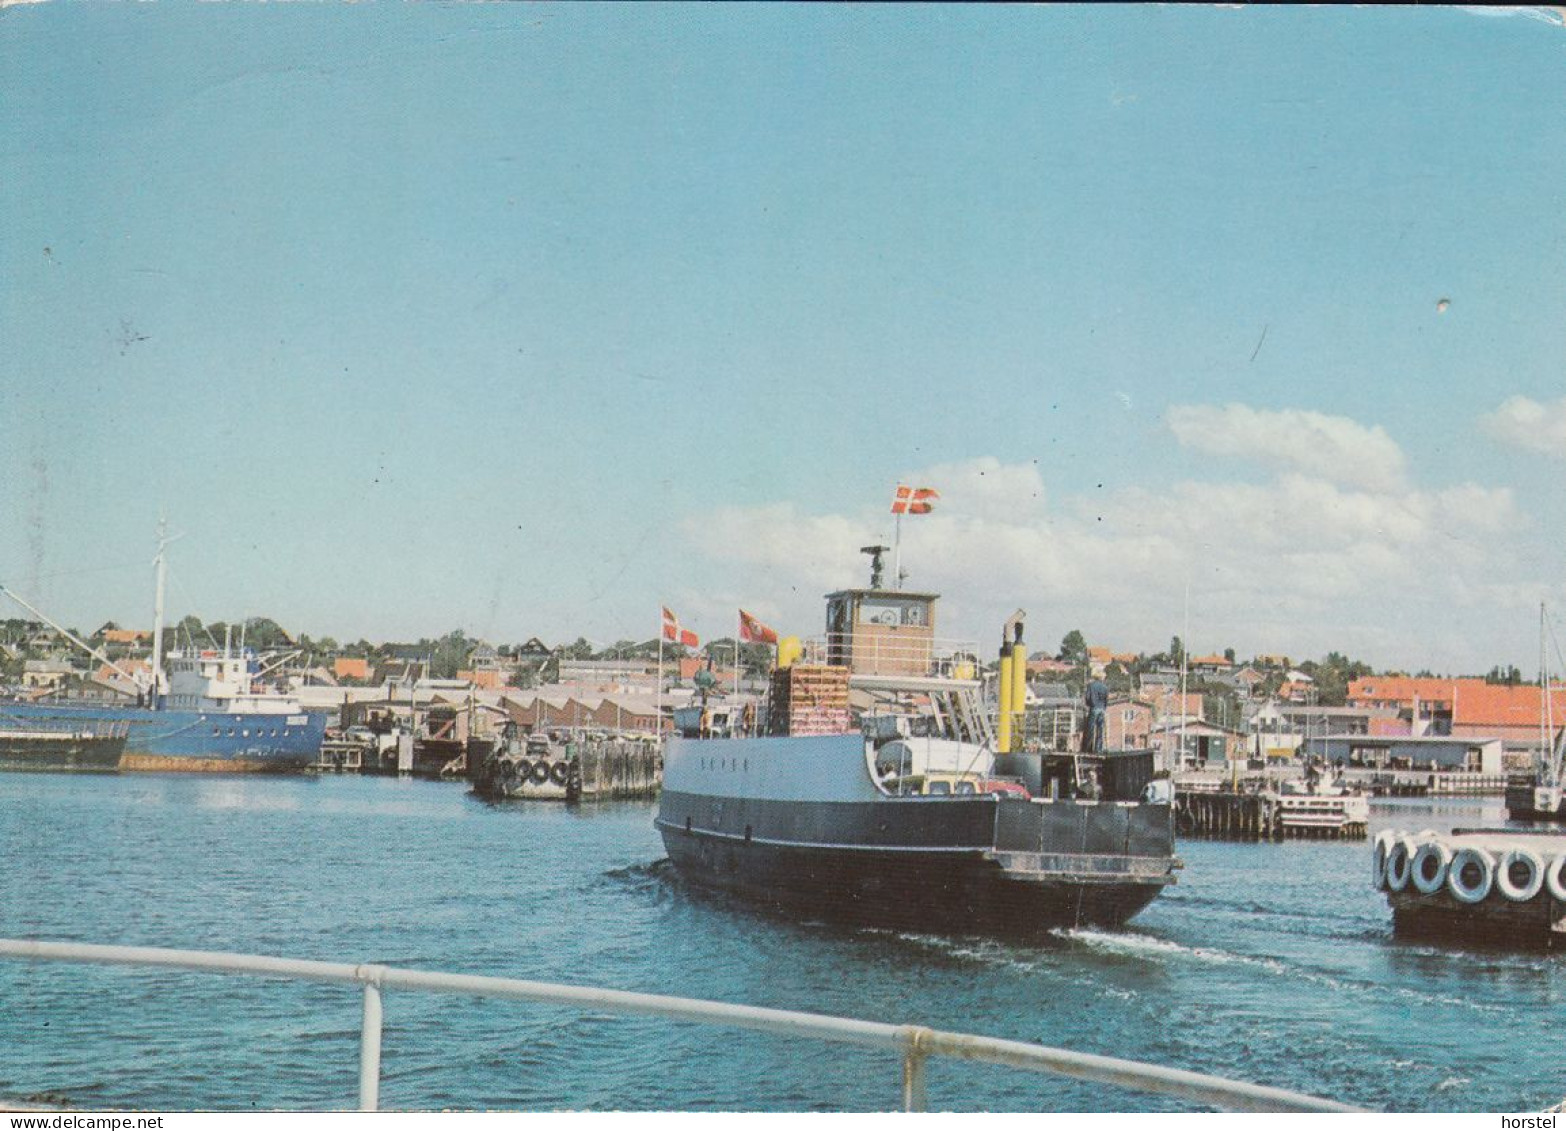 Dänemark - Hundested - Harbor - Ferry - Fähre - Nice Stamp - Denmark